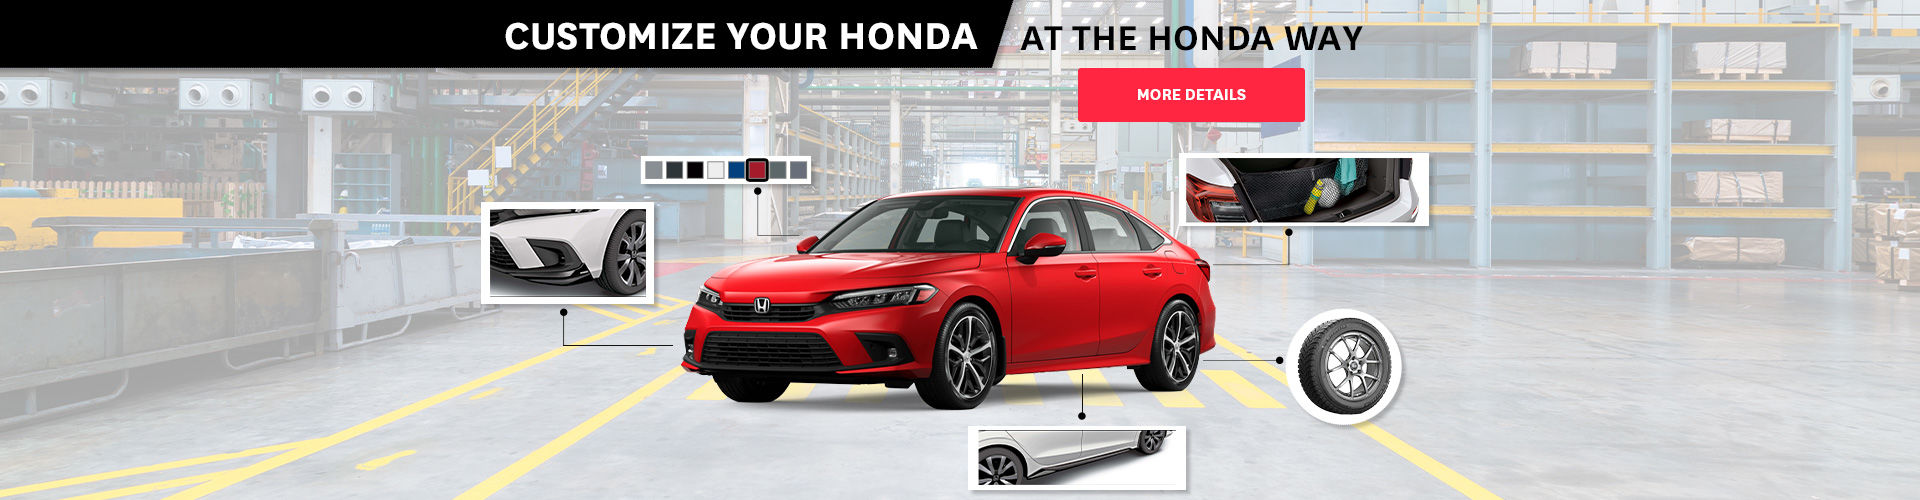 Customize your Honda